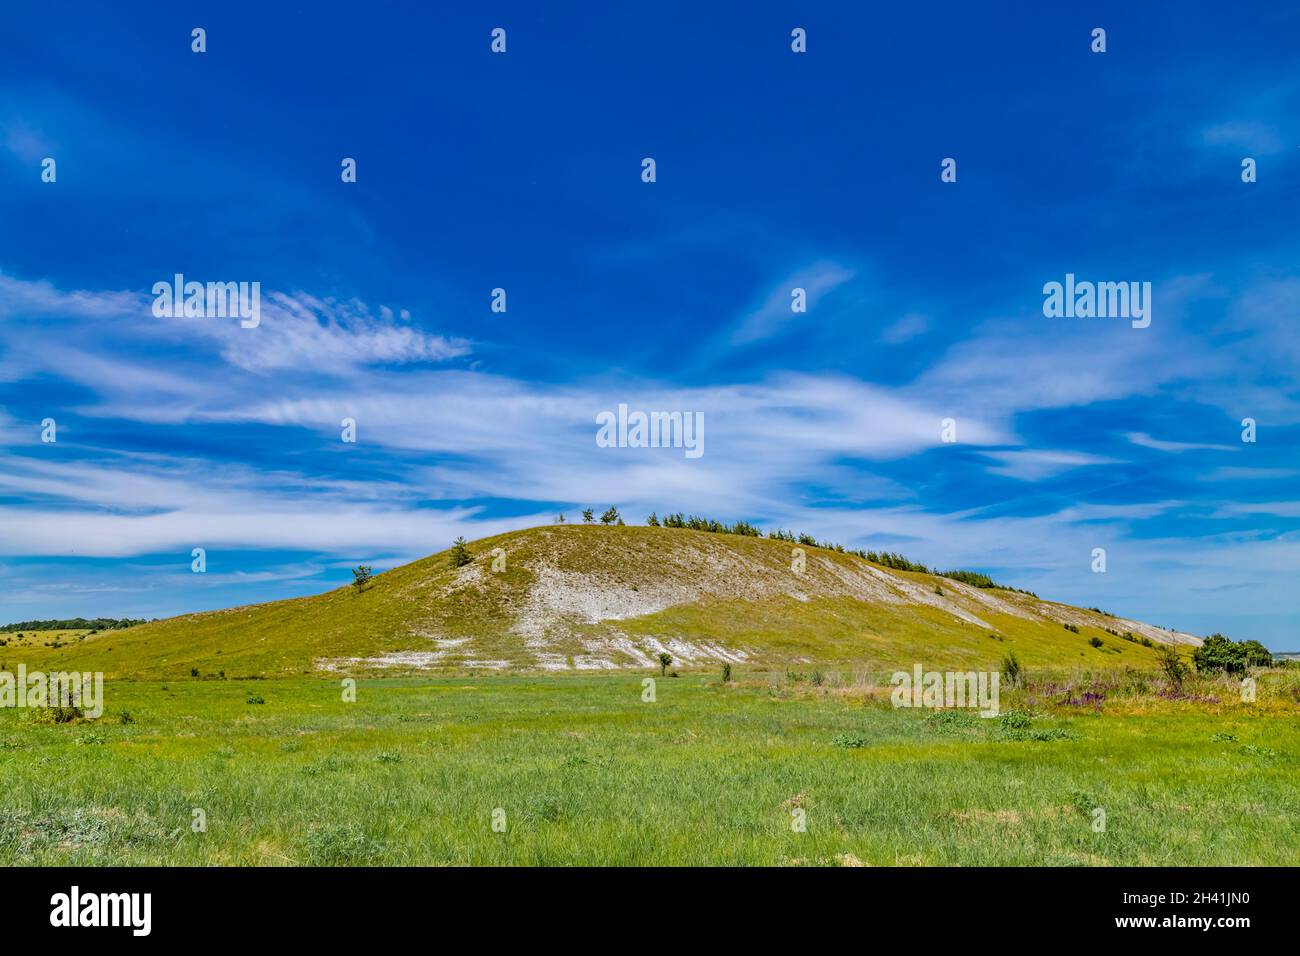 Rochers de craie blanche ou montagnes ou collines dans la steppe de craie, la réserve naturelle nationale de Dvorichanski en Ukraine, région de Kharkiv Banque D'Images